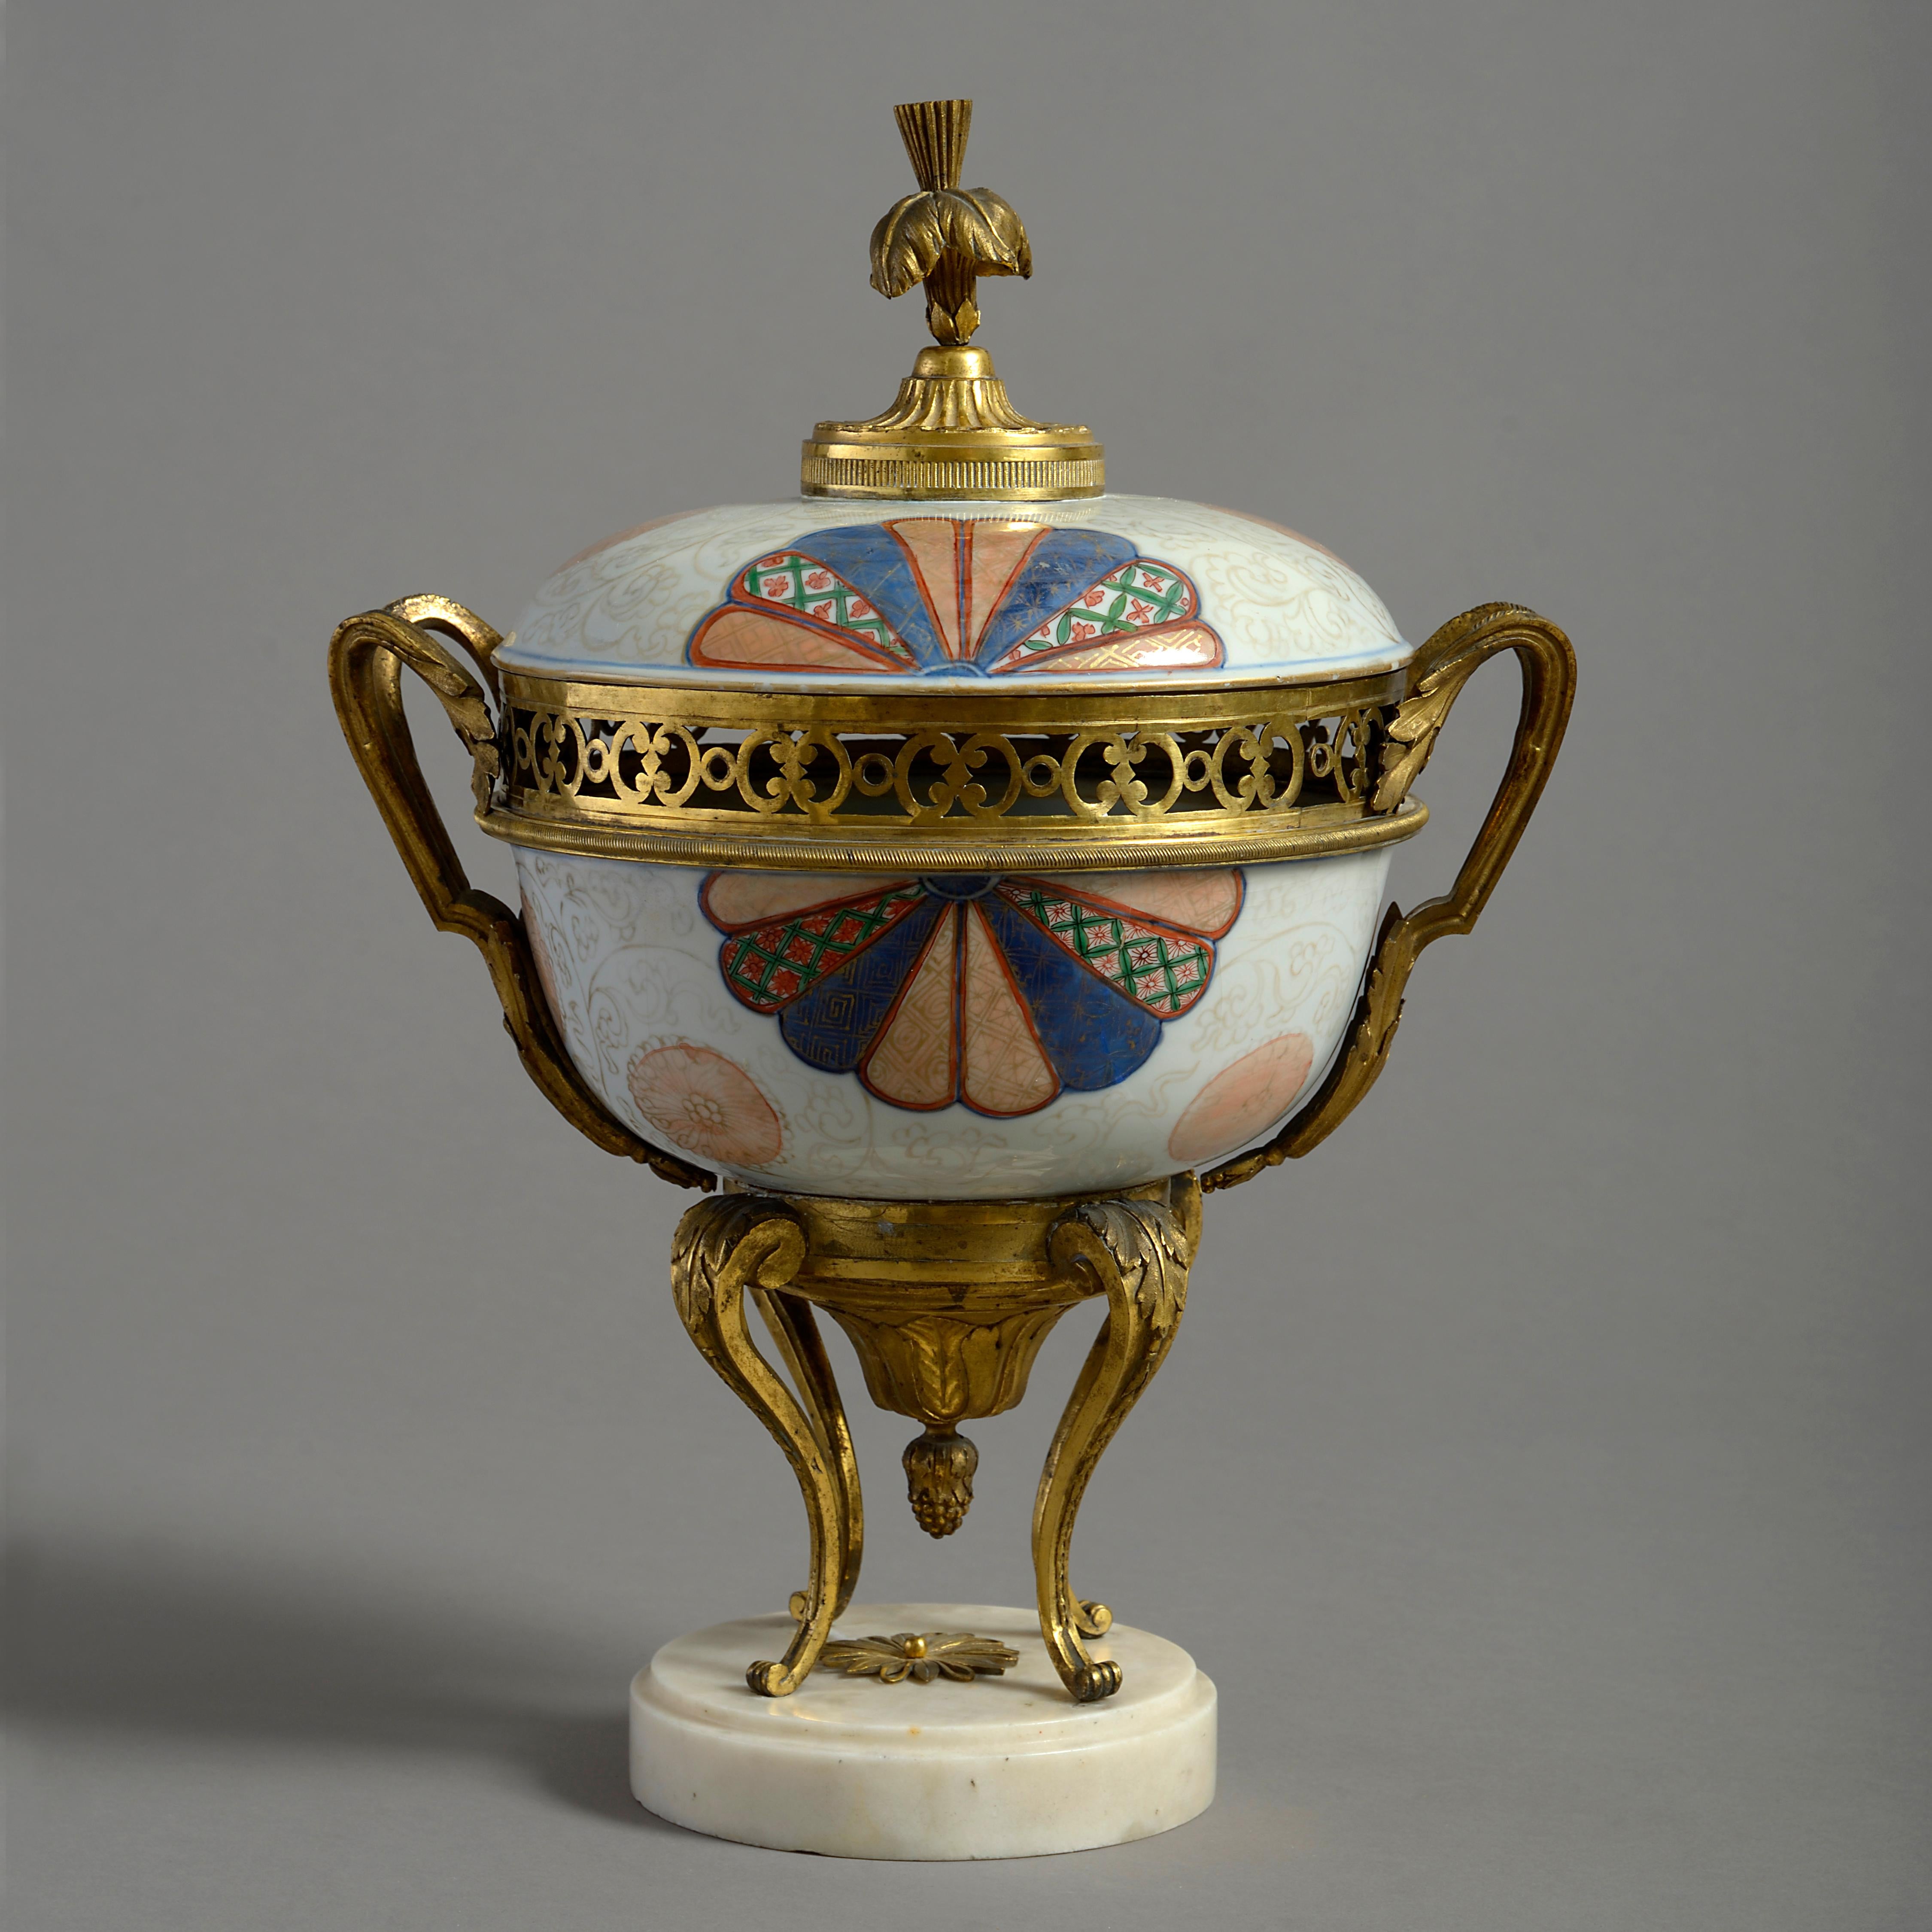 Un pot-pourri de bronze doré Charles X, de porcelaine japonaise et de marbre statuaire. La porcelaine date du 18e siècle, les montures de 1830.

.